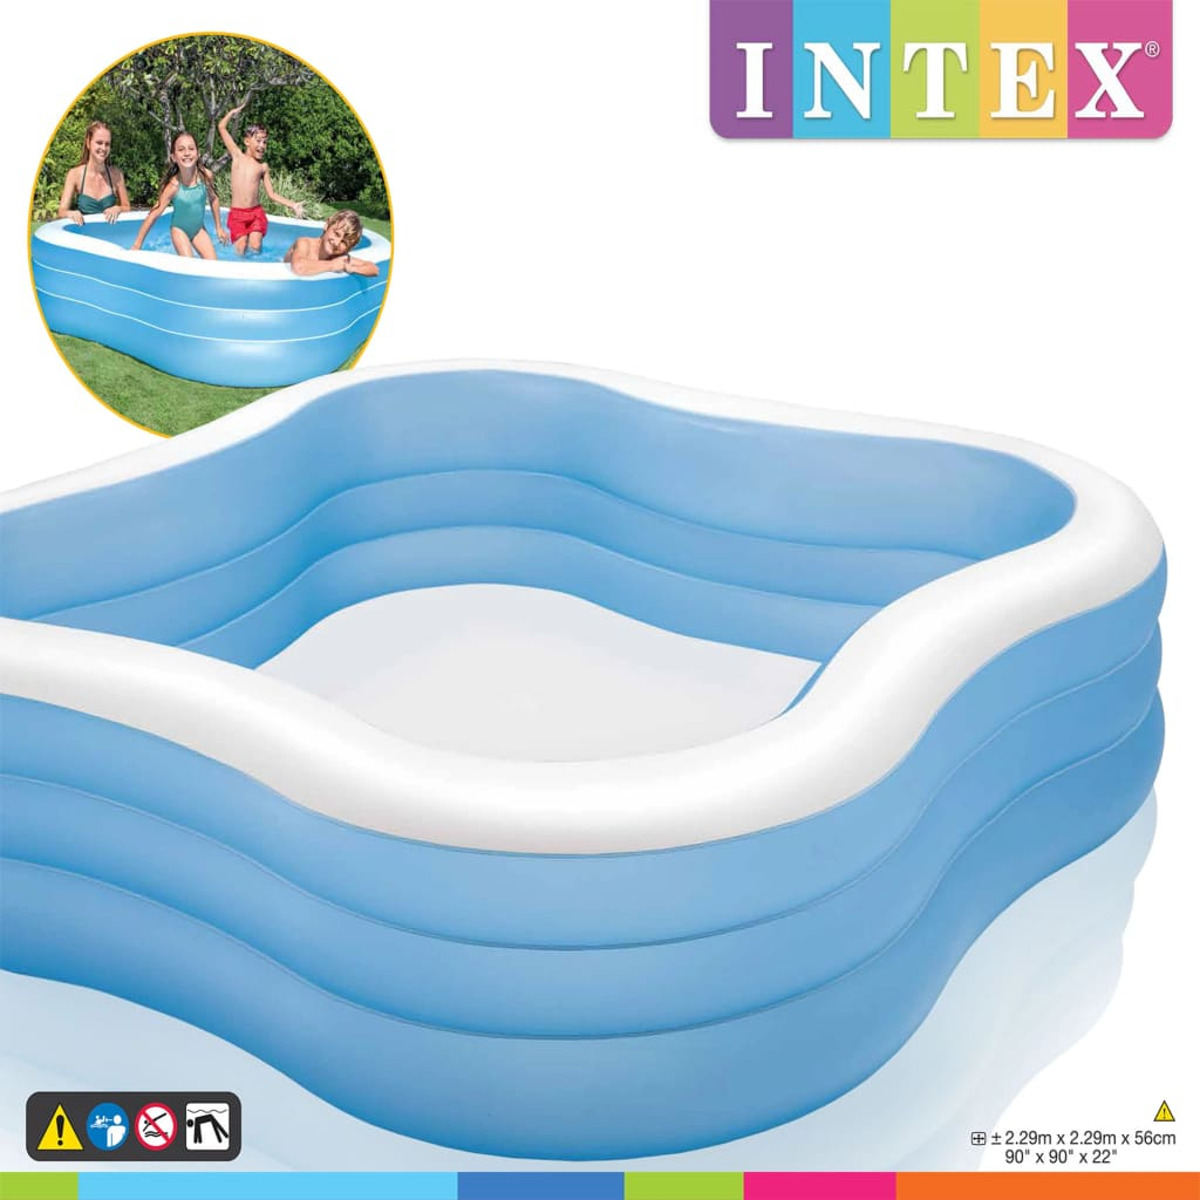 INTEX 91528 Pool, Blau